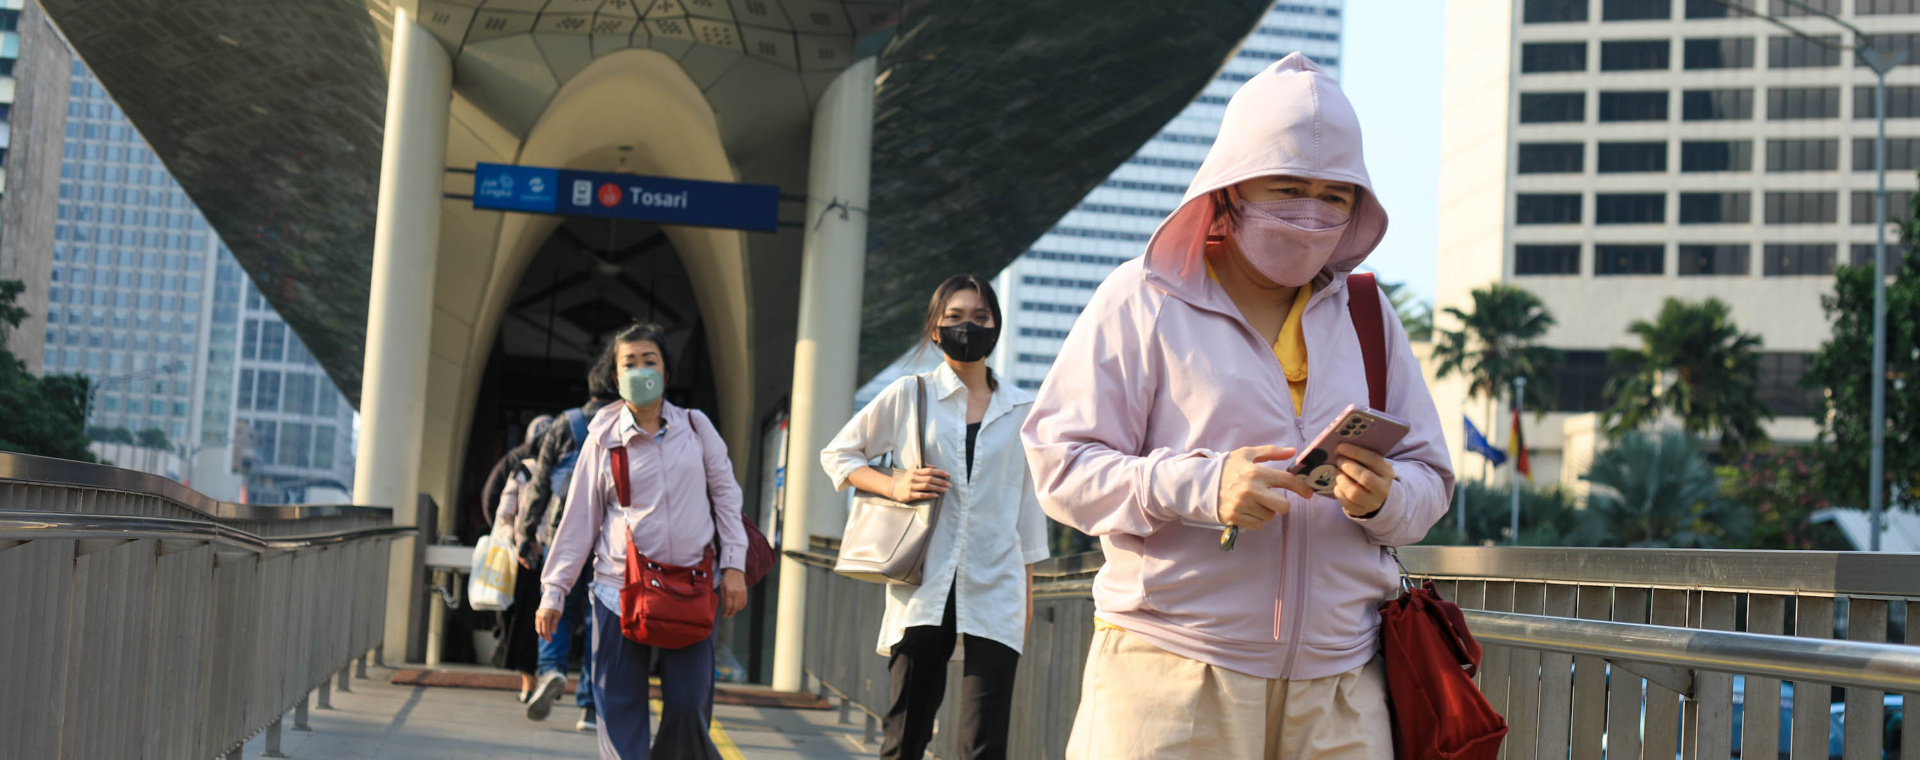 Warga yang menggunakan masker melintas di kawasan Jalan MH Thamrin, Jakarta, Selasa (8/8/2023). Pemprov DKI Jakarta mengimbau warga menggunakan masker untuk mengantisipasi polusi udara di Ibu Kota. Nilai klaim asuransi kesehatan meningkat hampir dua kali lipat dalam 2 tahun terakhir, salah satu pendorongnya adalah polusi udara yang memicu berbagai penyakit. - JIBI/Bisnis/Himawan L Nugraha